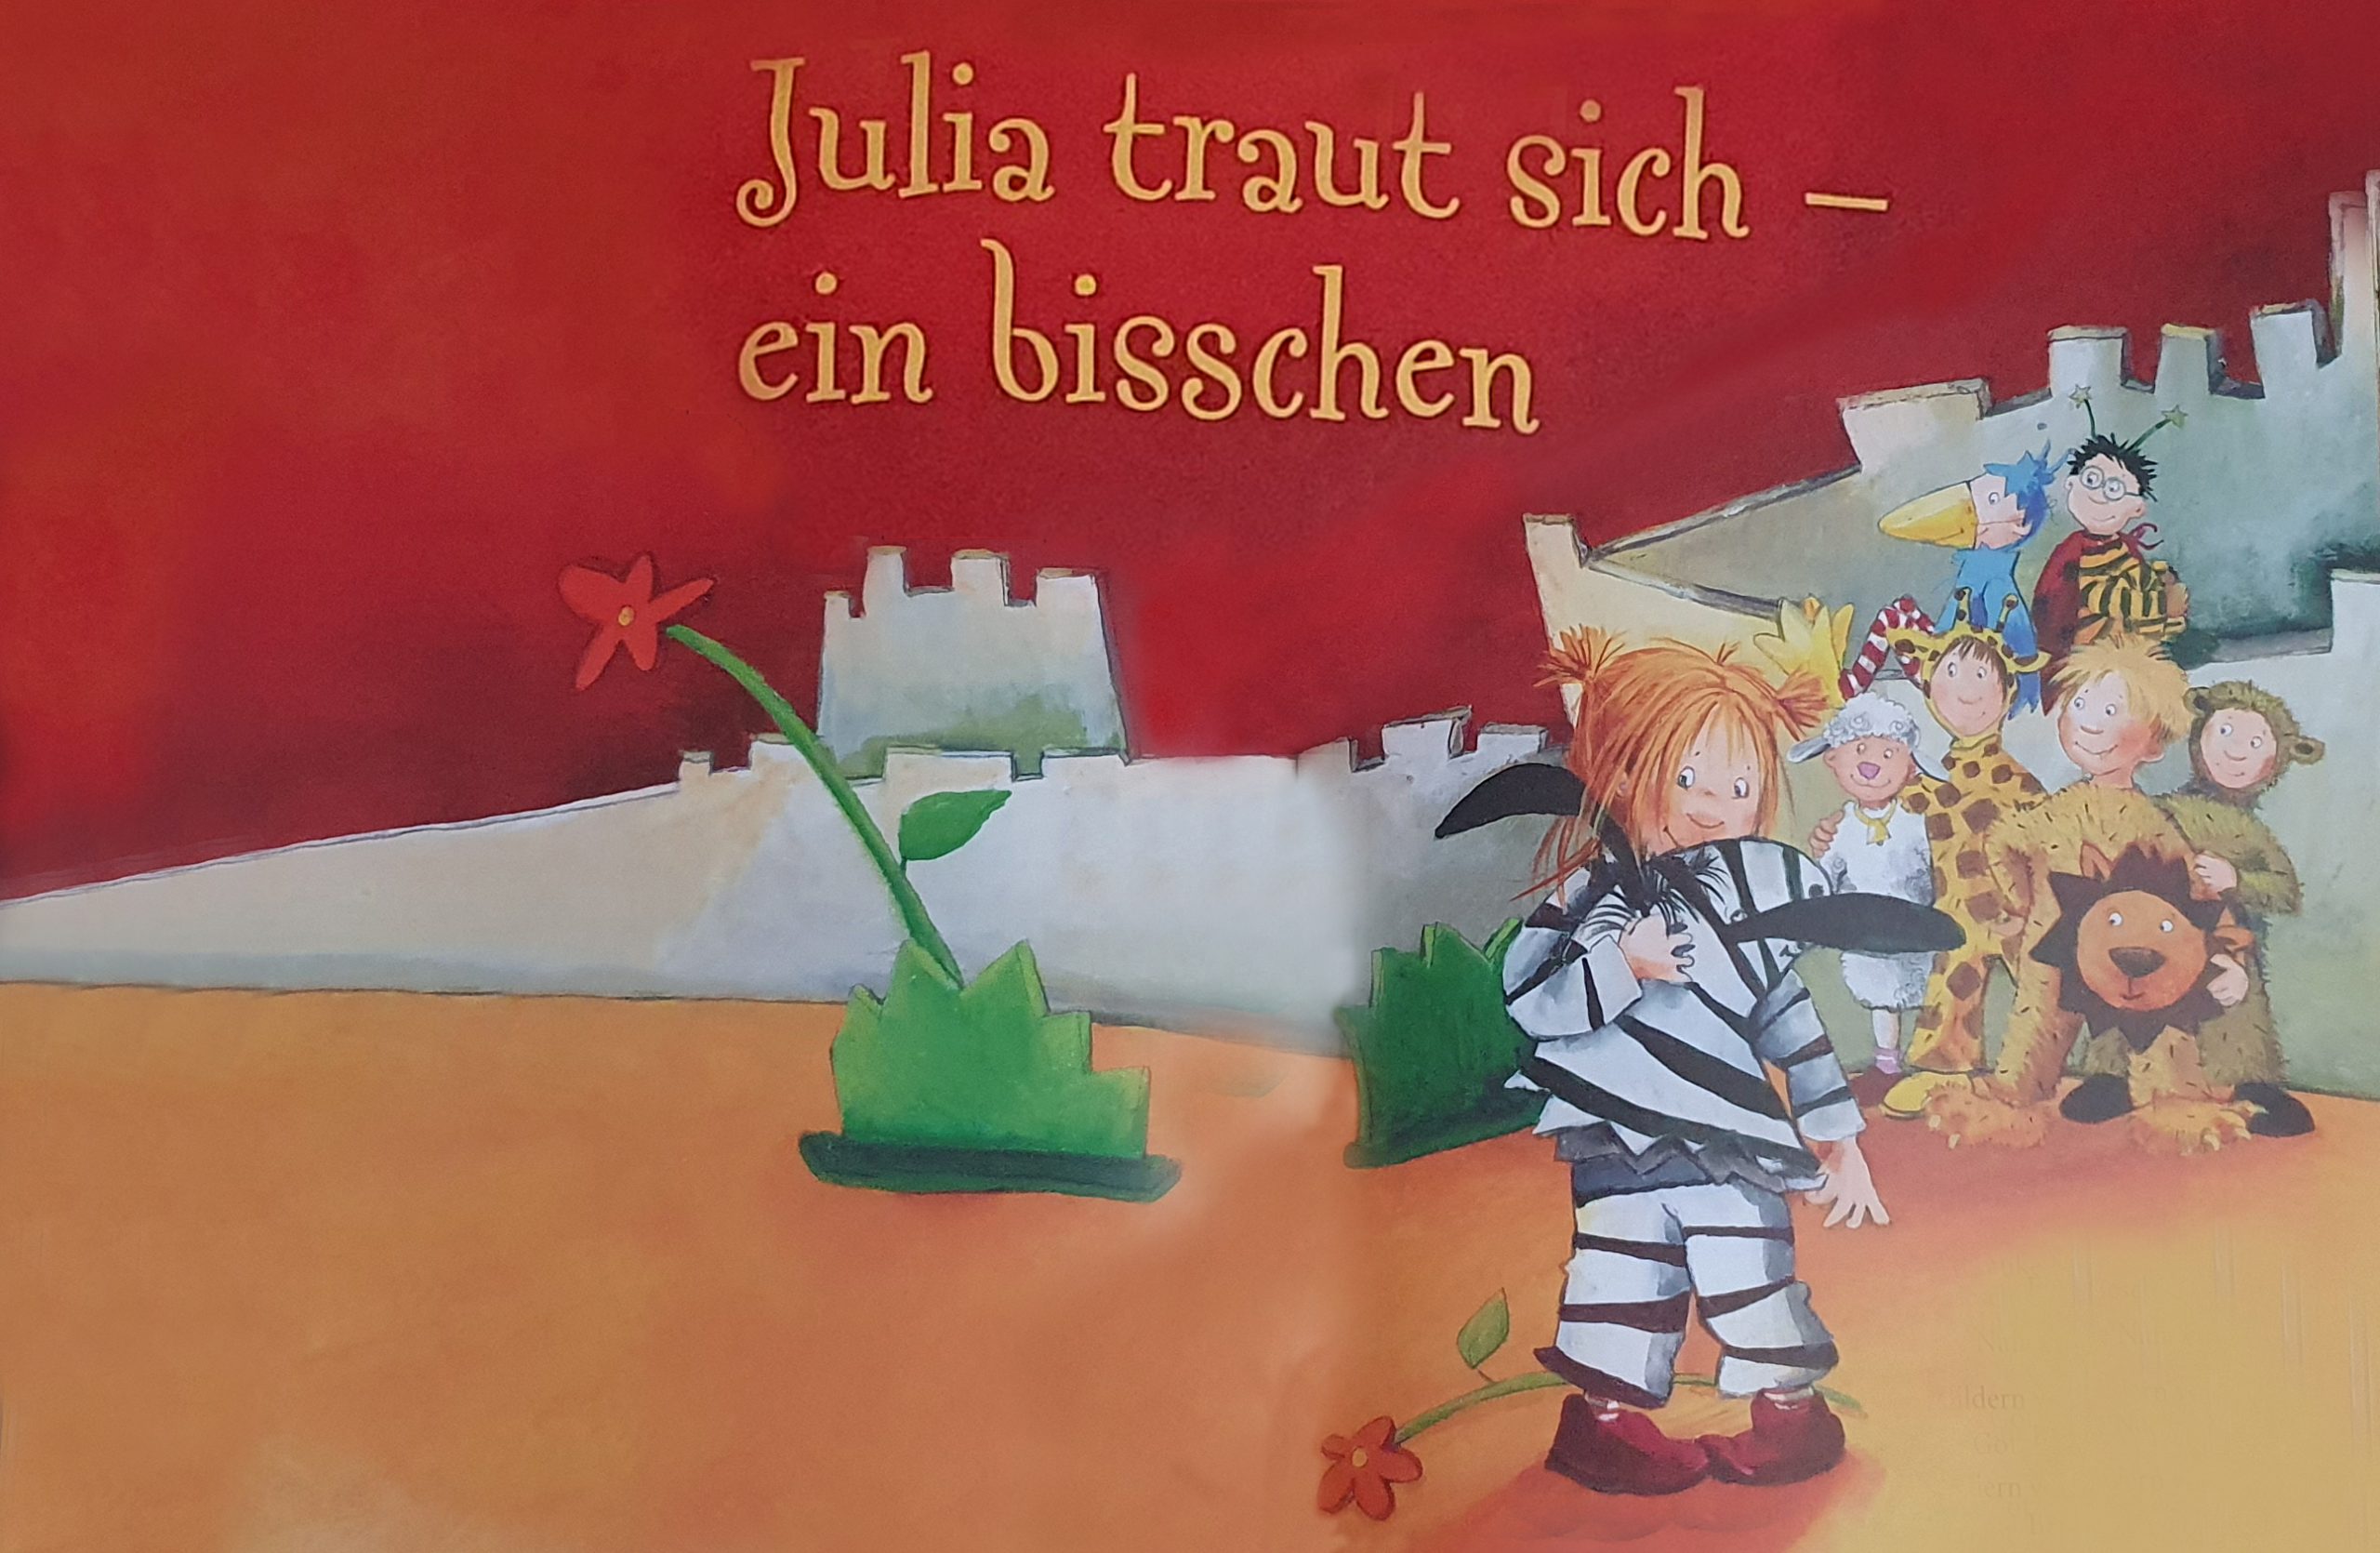 Julia traut sich – ein bisschen Eine Geschichte von Frauke Nahrgang. Bild von Betina Gotzen-Beek.